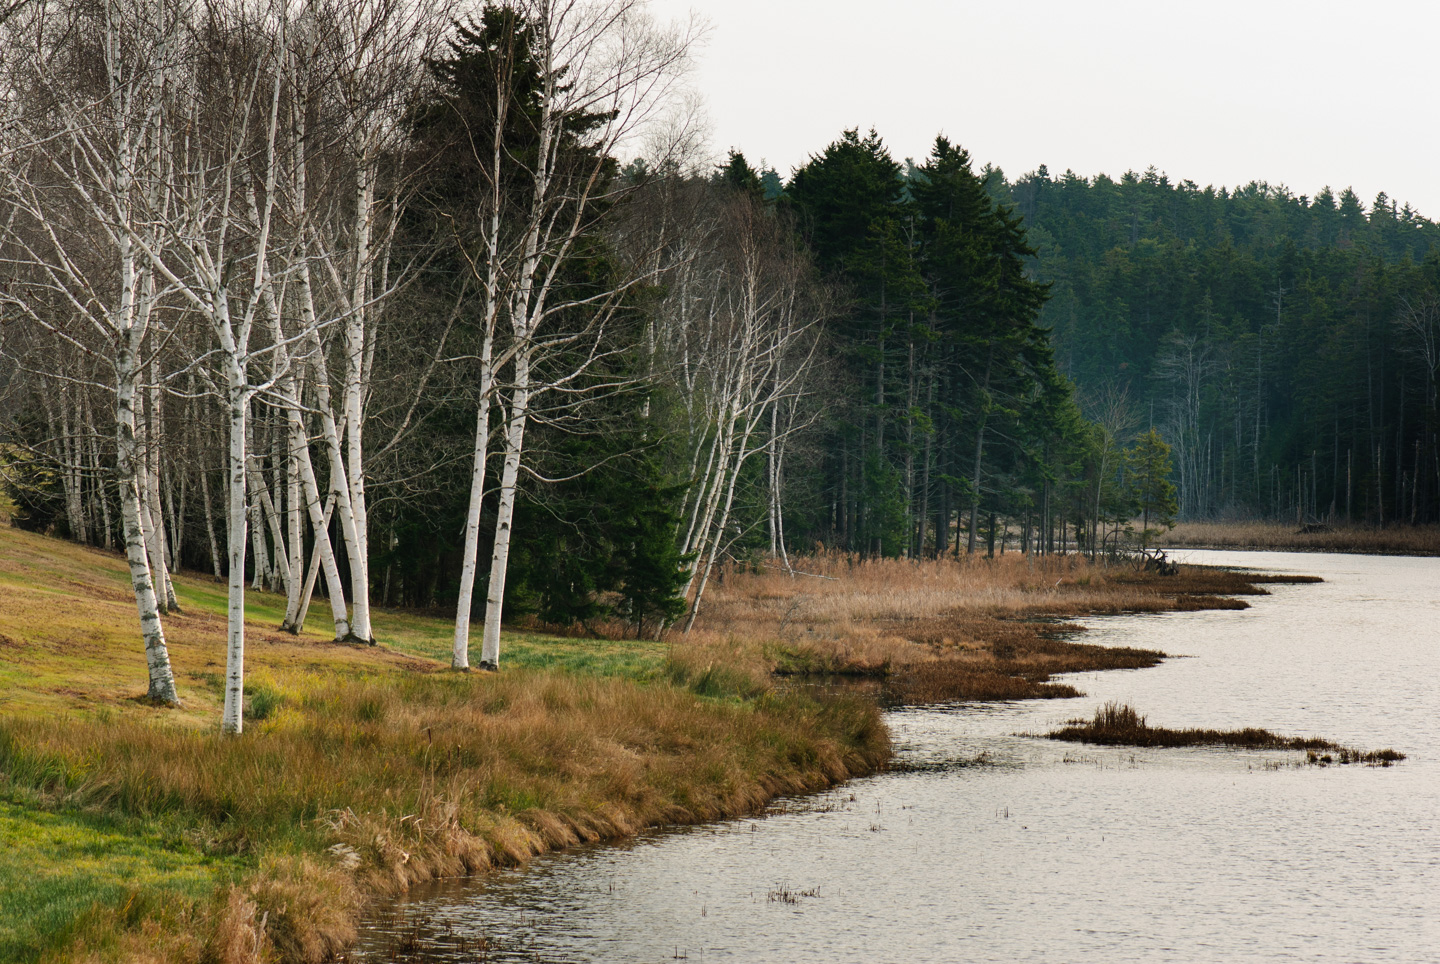 White Birch trees alongside water, Orr's Island, Maine